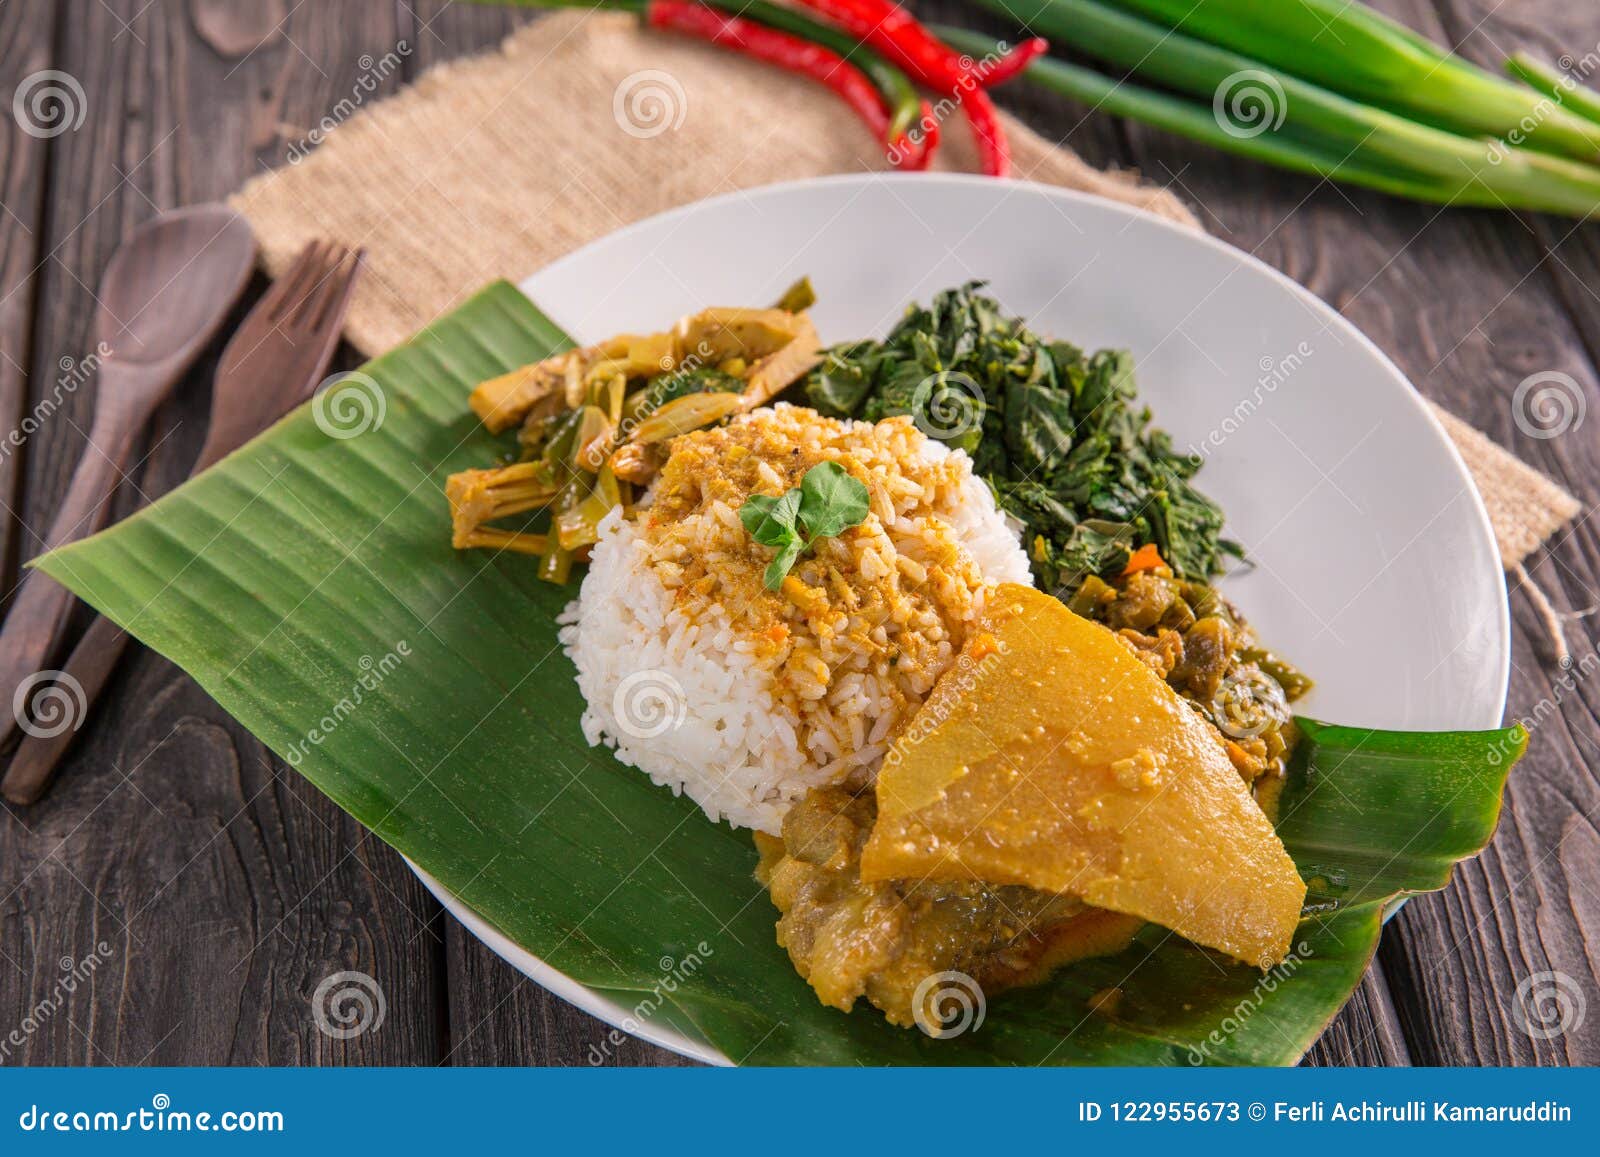 Nasi Padang Indonesian Food Stock Image - Image of milk, leaf: 122955673